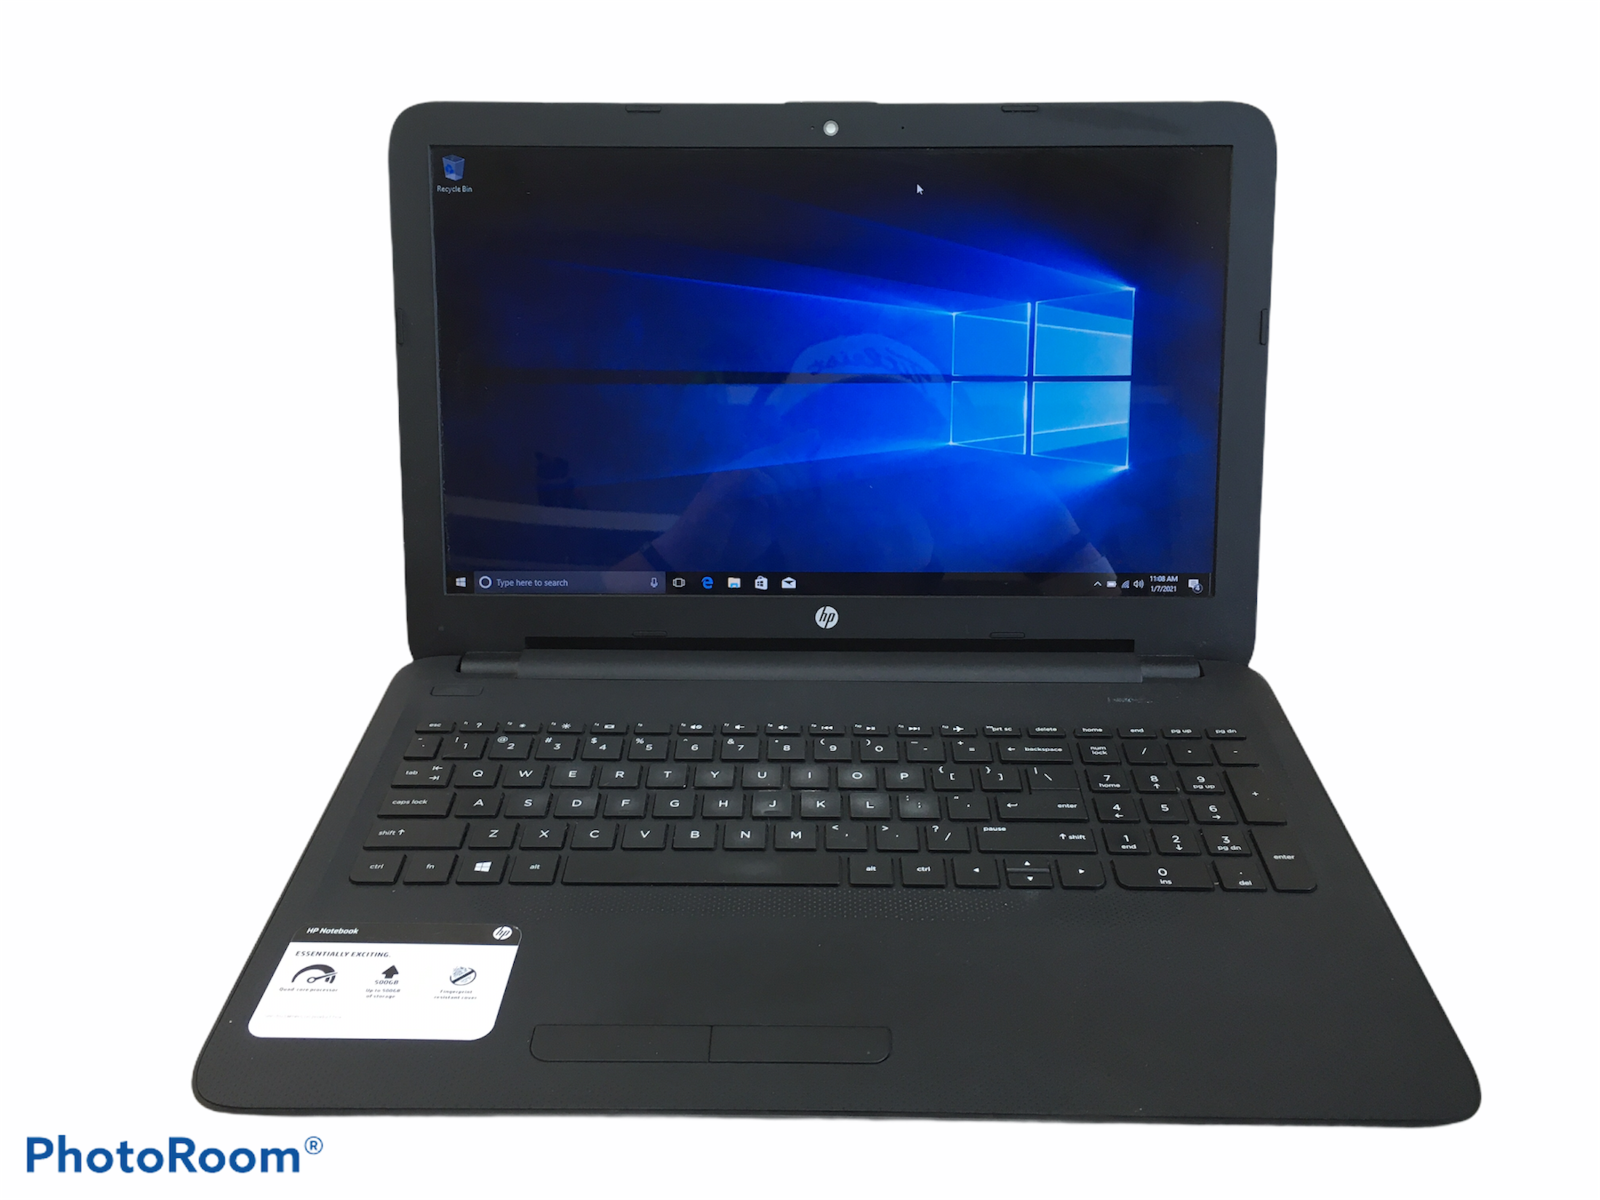 HP Notebook 15-AF131DX AMD A6-5200 APU 2GHz 500GB HDD 8GB Ram Windows 10 Home